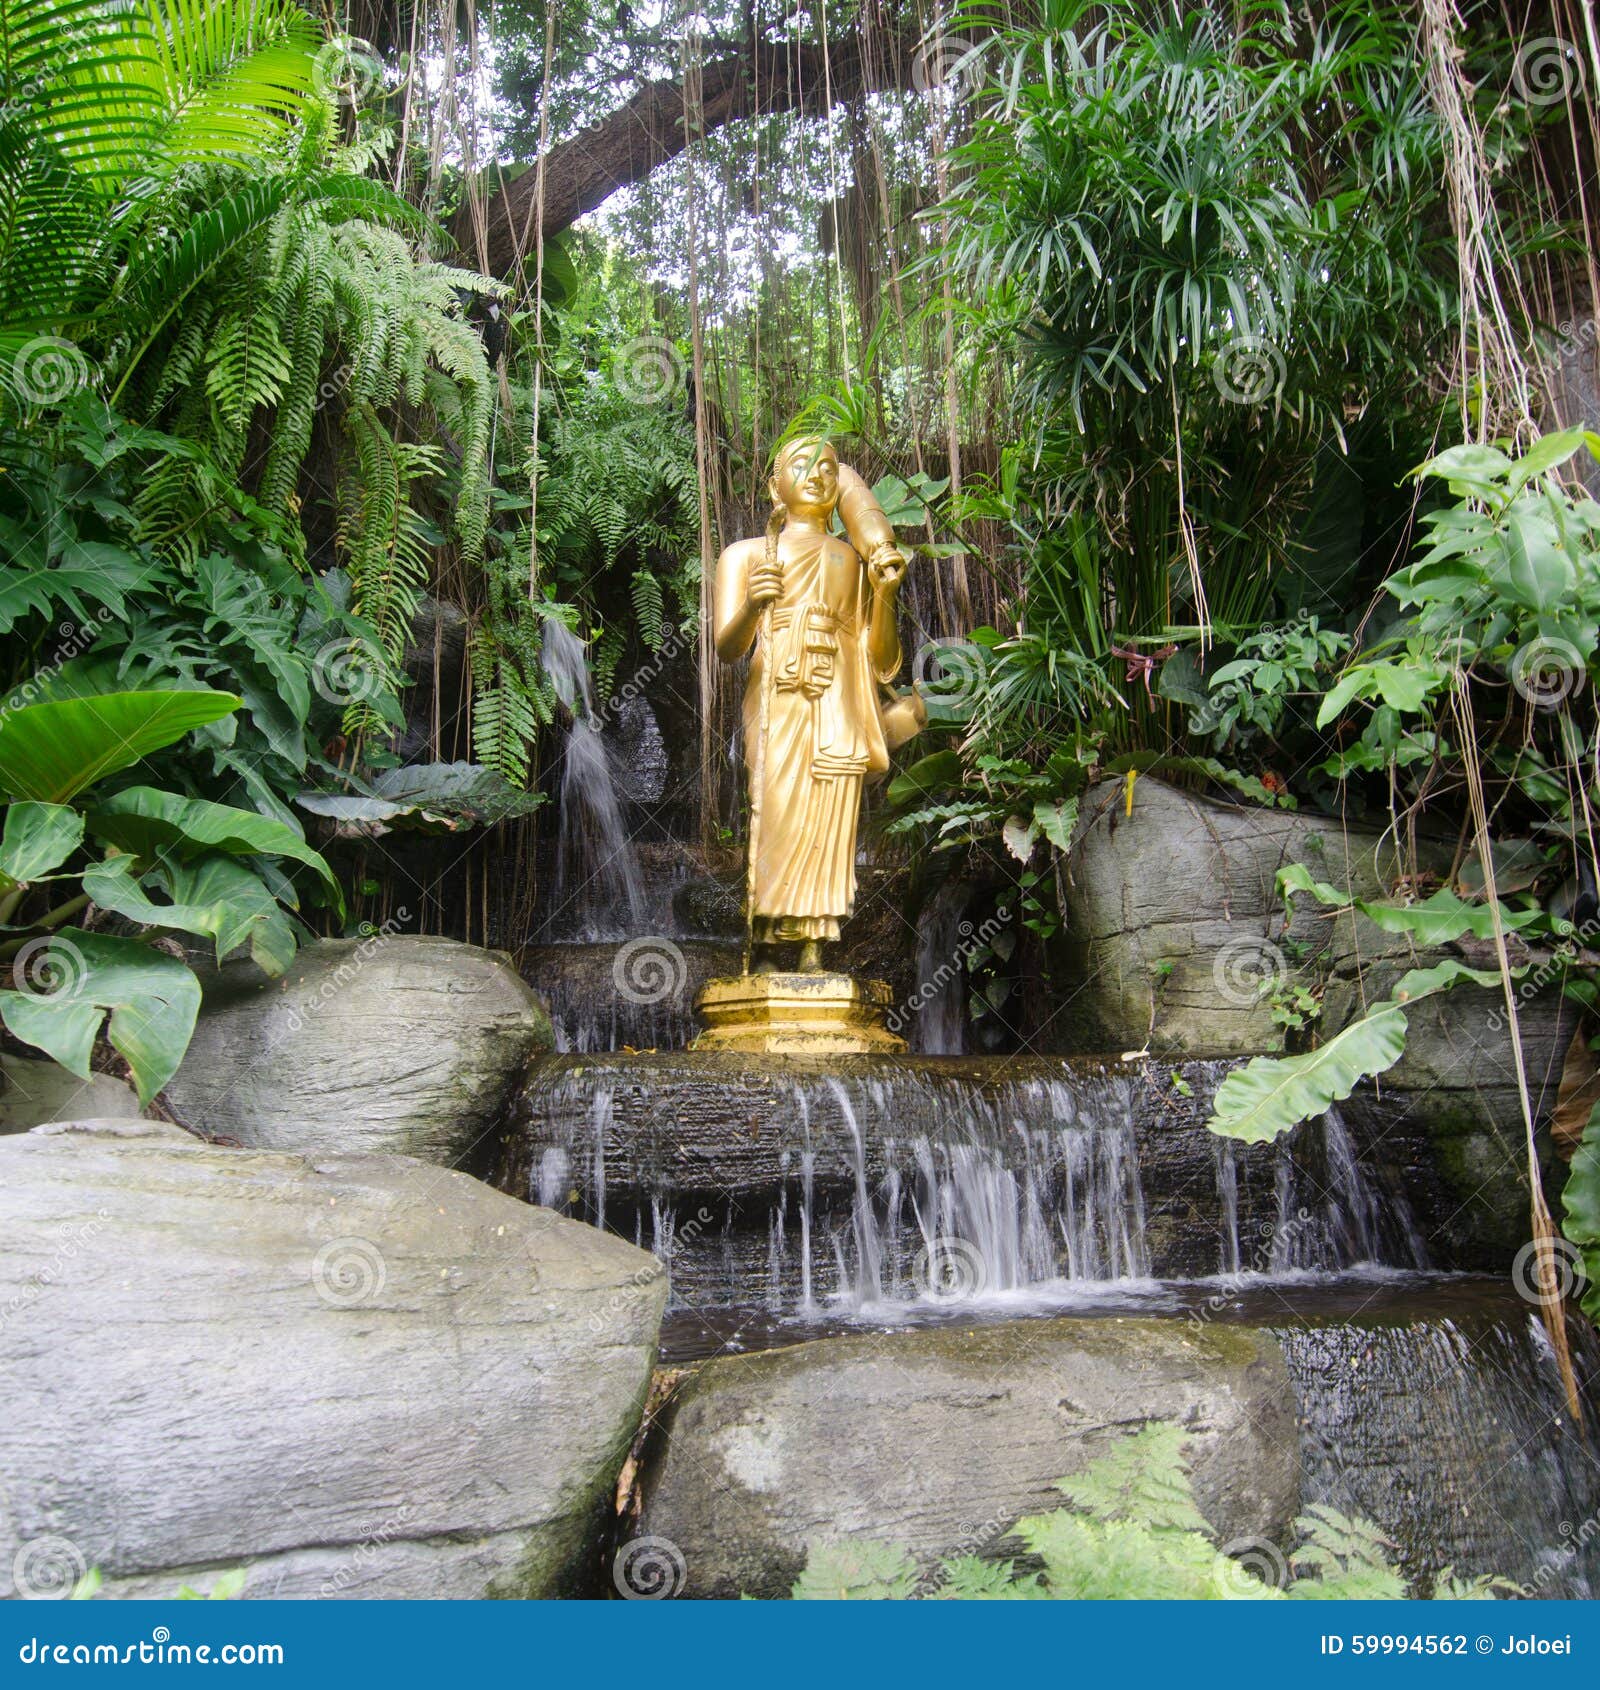 Άγαλμα του Βούδα στο χρυσό ναό υποστηριγμάτων (wat sraket rajavaravihara) στη Μπανγκόκ, Ταϊλάνδη